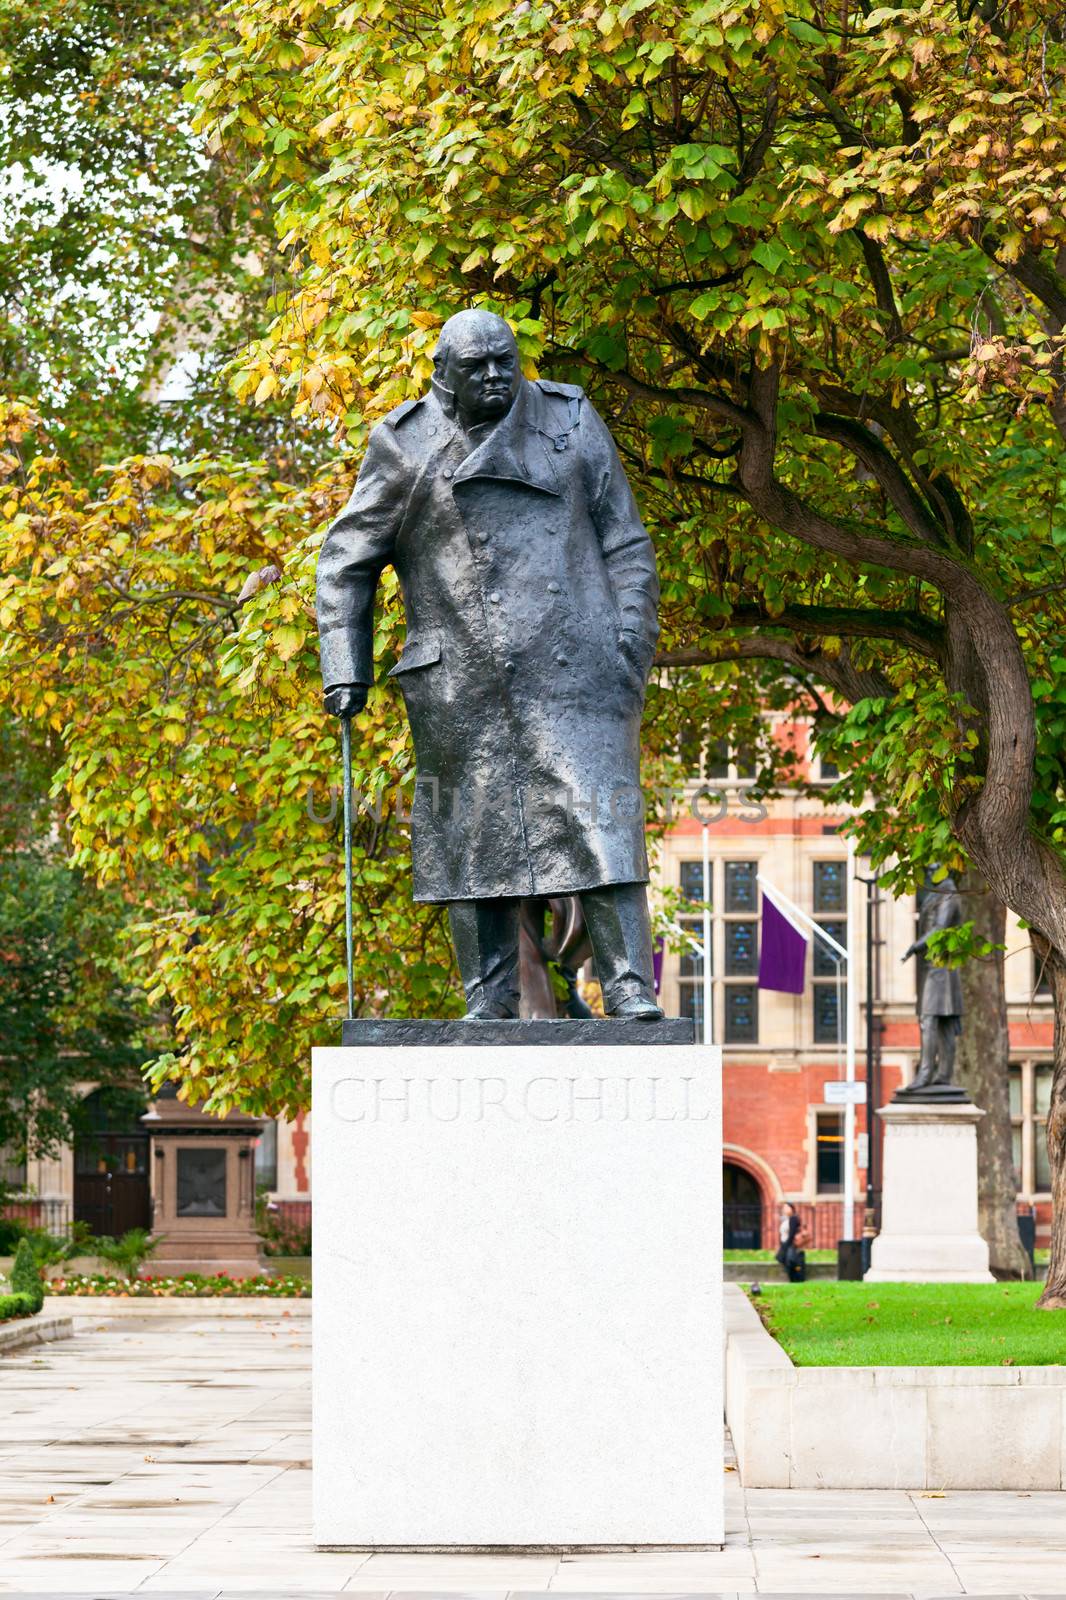 Statue of Winston Churchill in Parliament Square, London